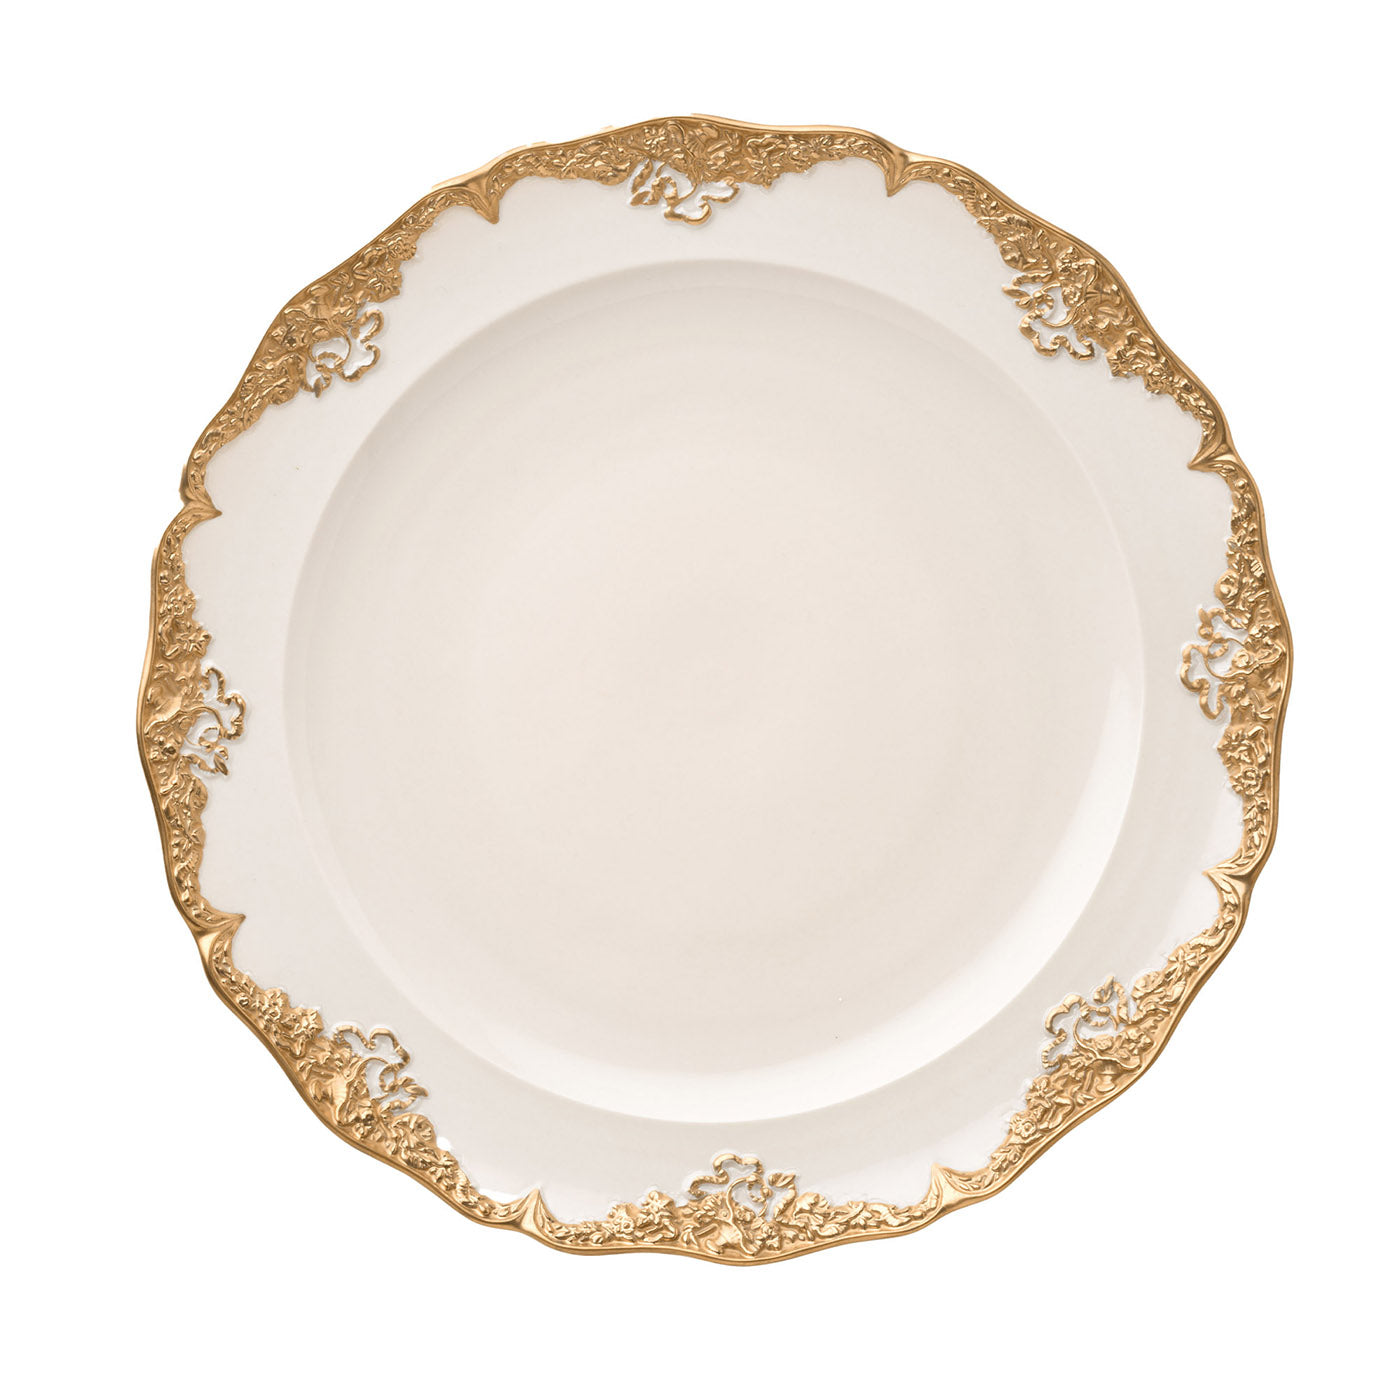 Irene - Lot de 2 assiettes plates blanches et dorées - Vue principale